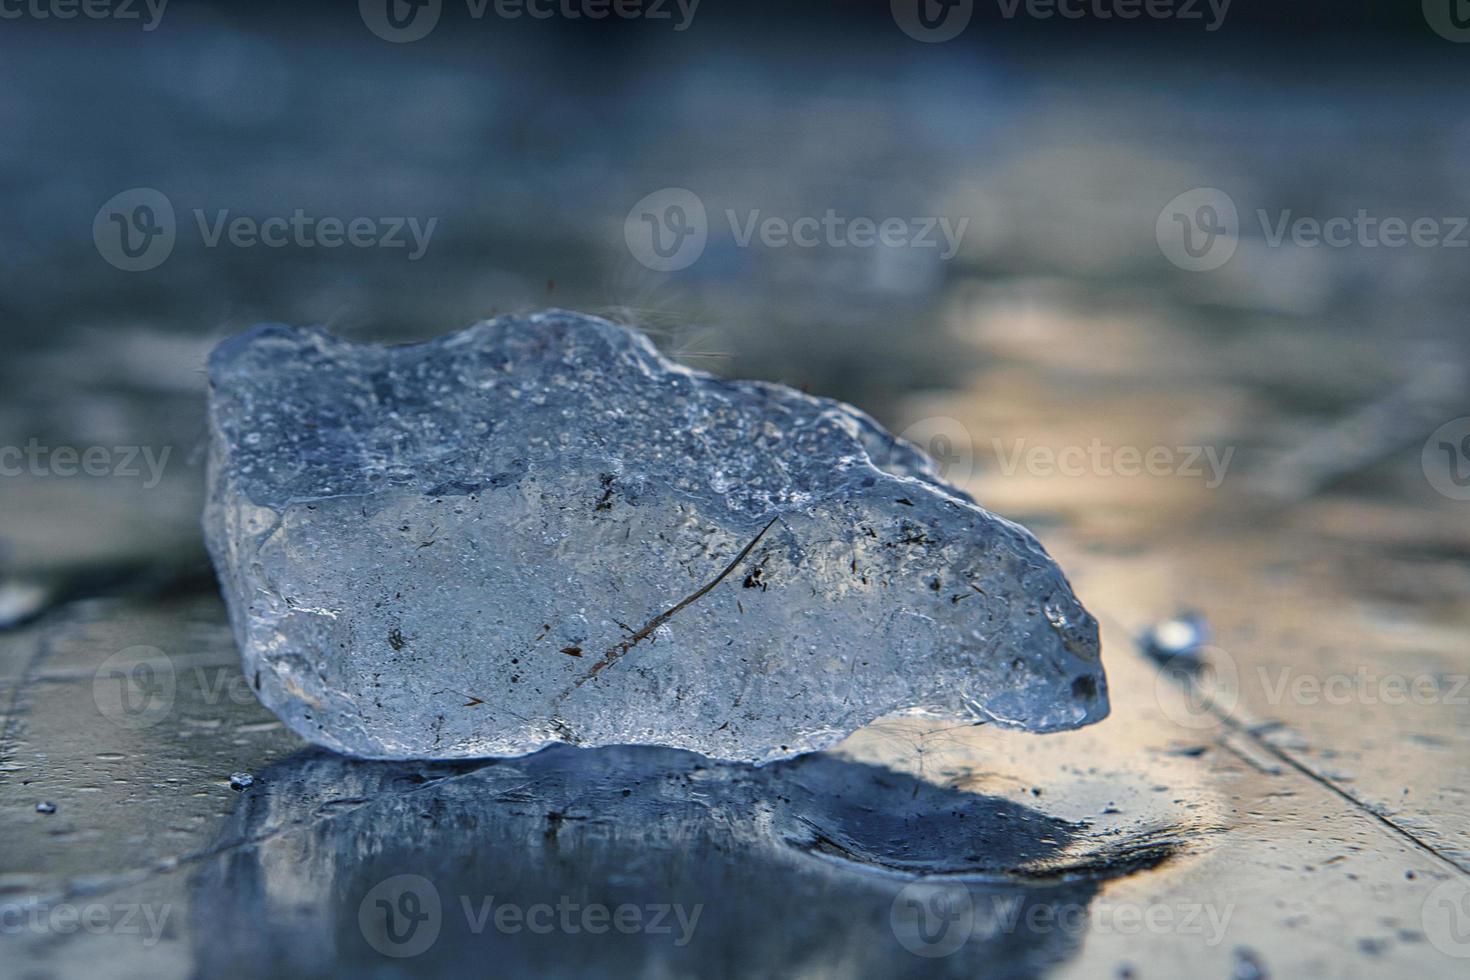 pedaços de gelo em um lago ao pôr do sol na atmosfera de inverno foto